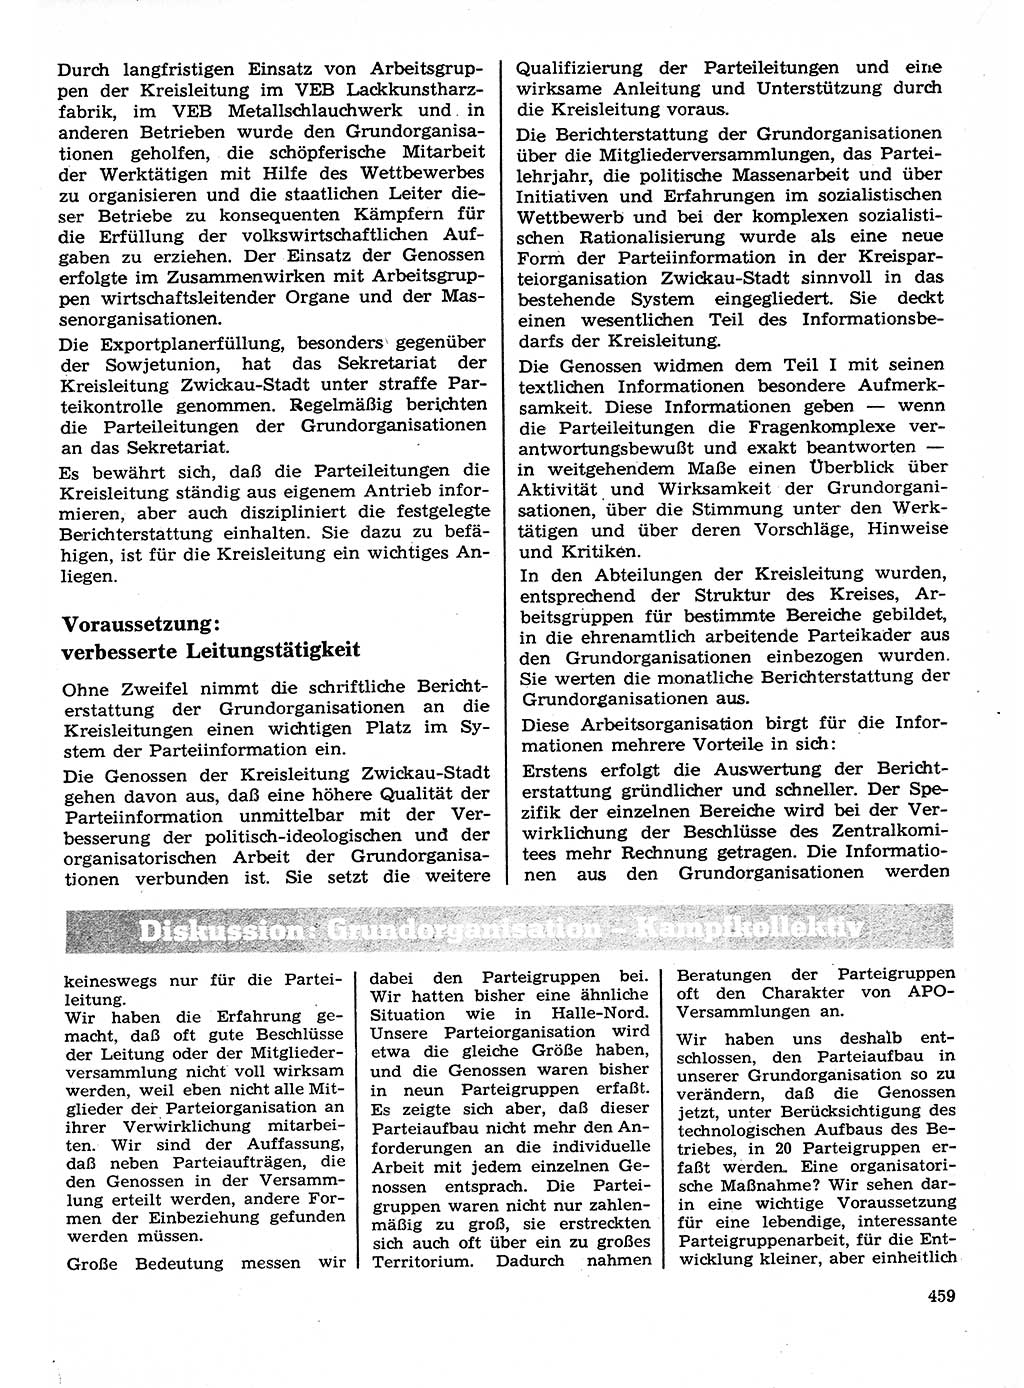 Neuer Weg (NW), Organ des Zentralkomitees (ZK) der SED (Sozialistische Einheitspartei Deutschlands) für Fragen des Parteilebens, 26. Jahrgang [Deutsche Demokratische Republik (DDR)] 1971, Seite 459 (NW ZK SED DDR 1971, S. 459)